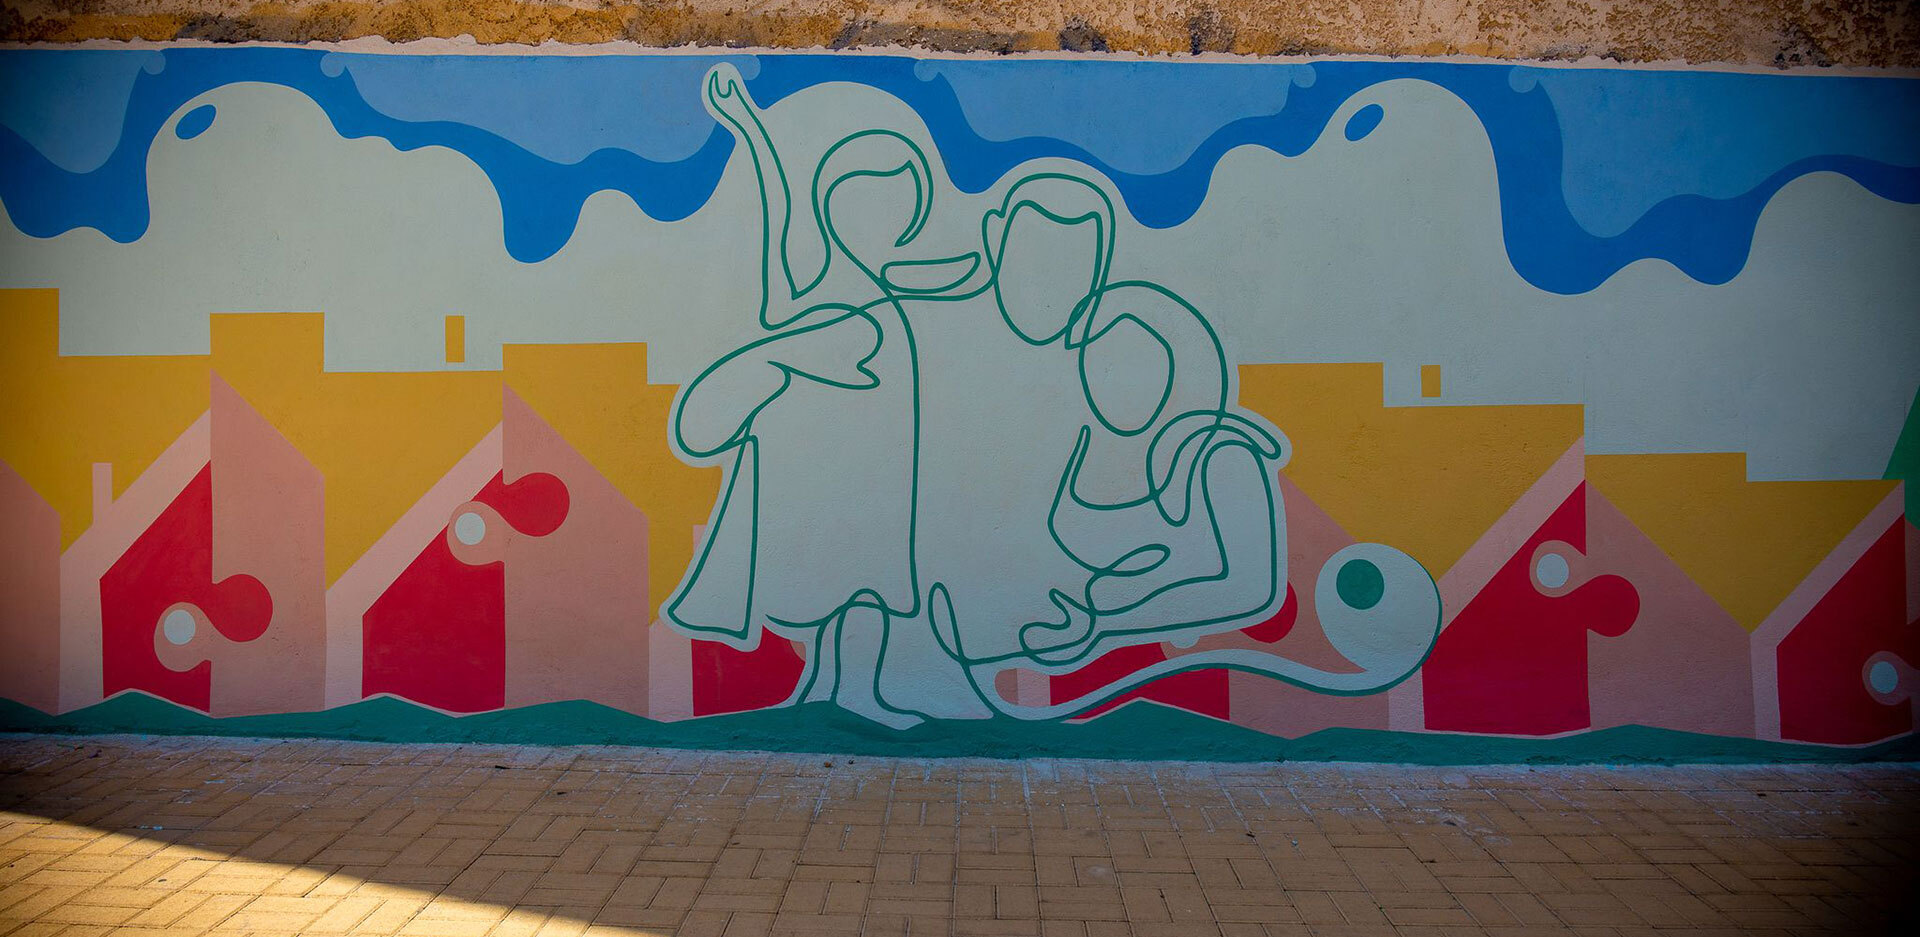 Ο Θάνος Ραφτόπουλος δυμιούργησε ένα ξεχωριστό street art στο Πάρκο Οικογένειας στον Άγιο Δημήτριο.